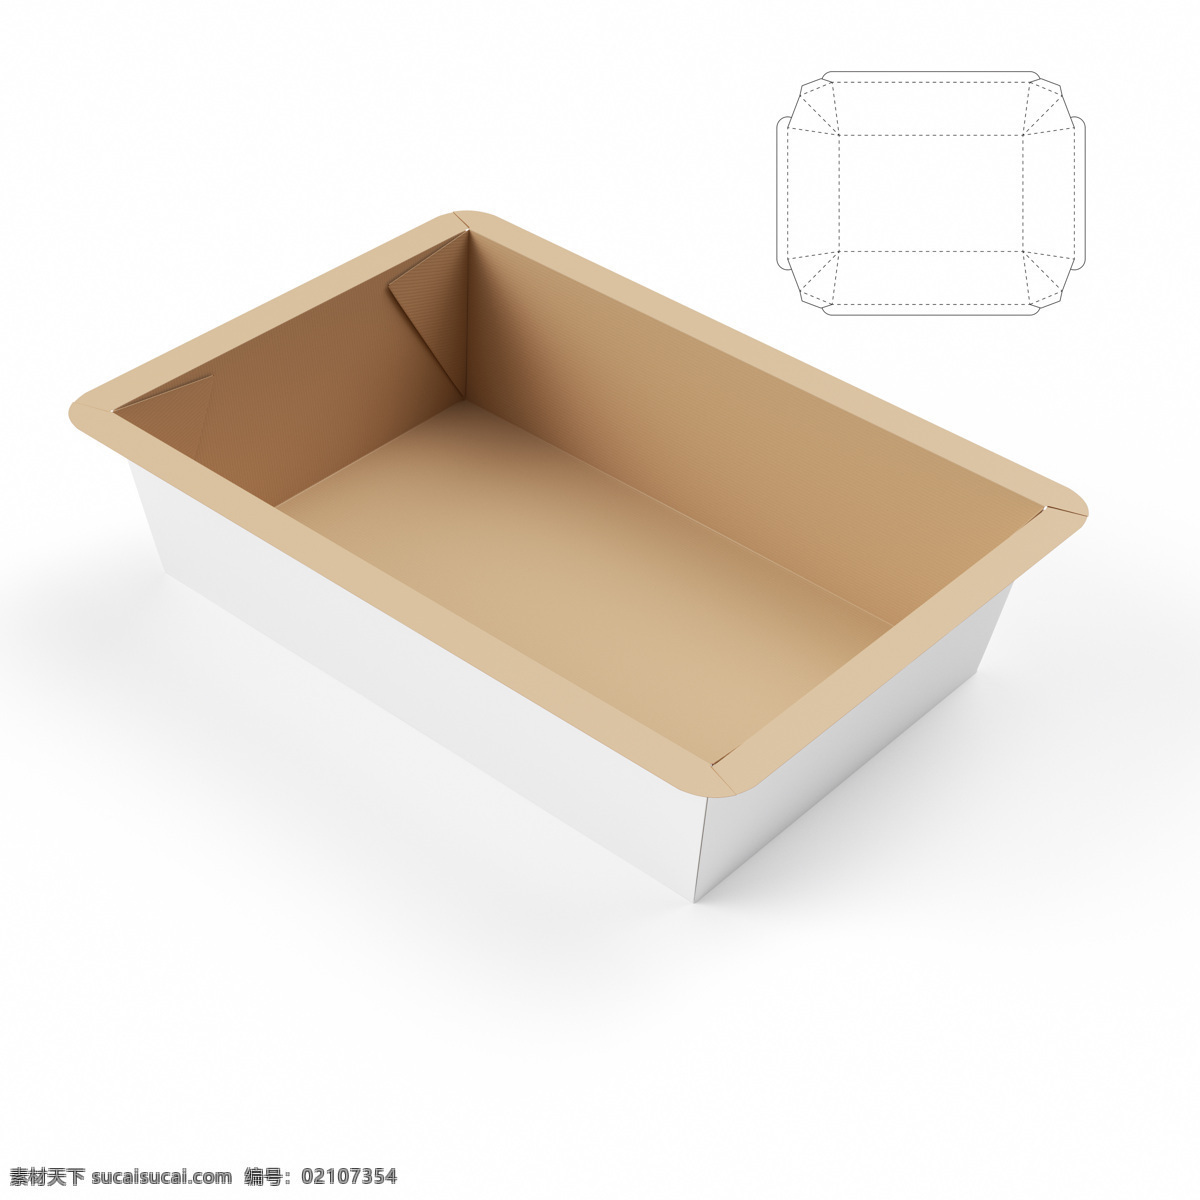 创意 包装盒 模板 包装盒模板 包装盒设计 创意包装设计 包装盒展开图 包装效果图 包装盒子 包装设计 其他类别 生活百科